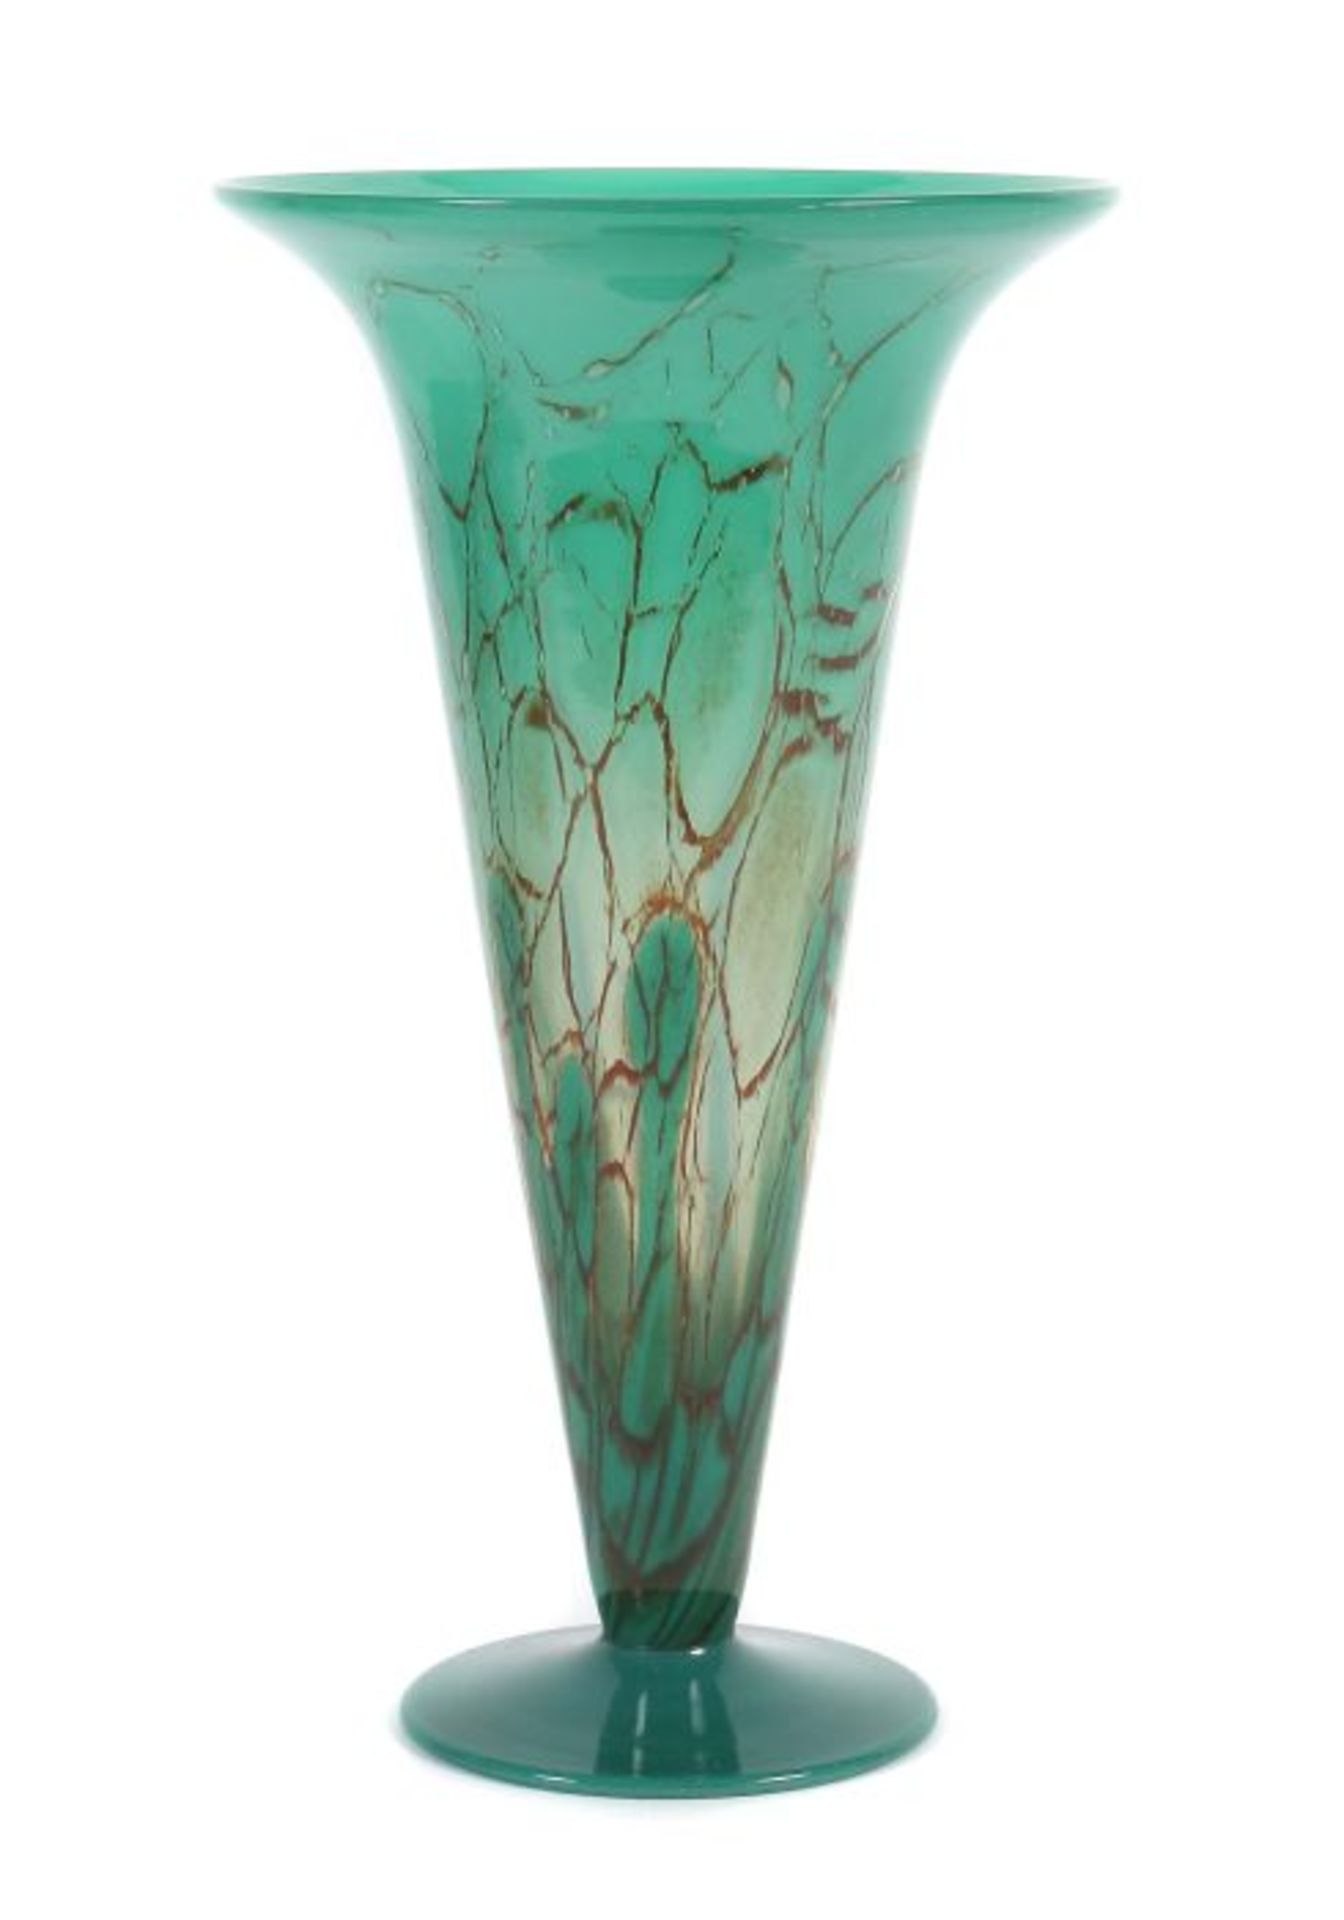 Hohe Ikora-TrichtervaseWMF Geislingen, 1930er Jahre, farbloses Kristallglas, mundgeblasen,